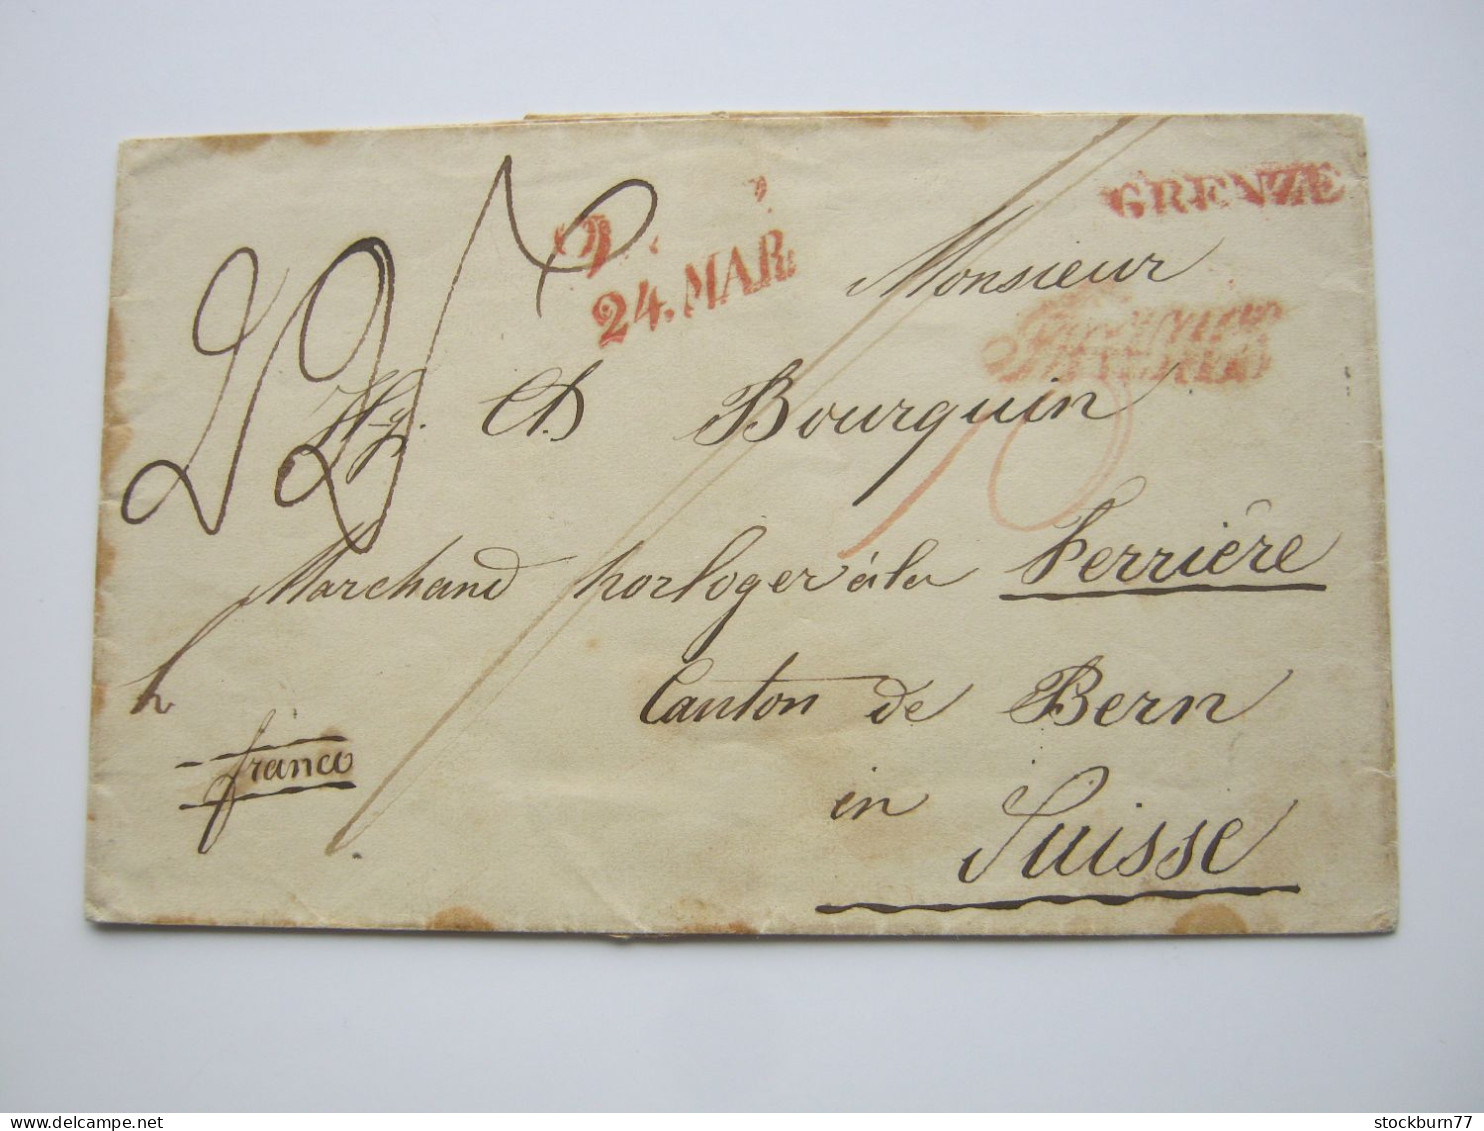 ÖSTERREICH , Ca. 1840 , Brief Aus WIEN  In Die Schweiz , Stempel : "Grenze" - ...-1850 Voorfilatelie